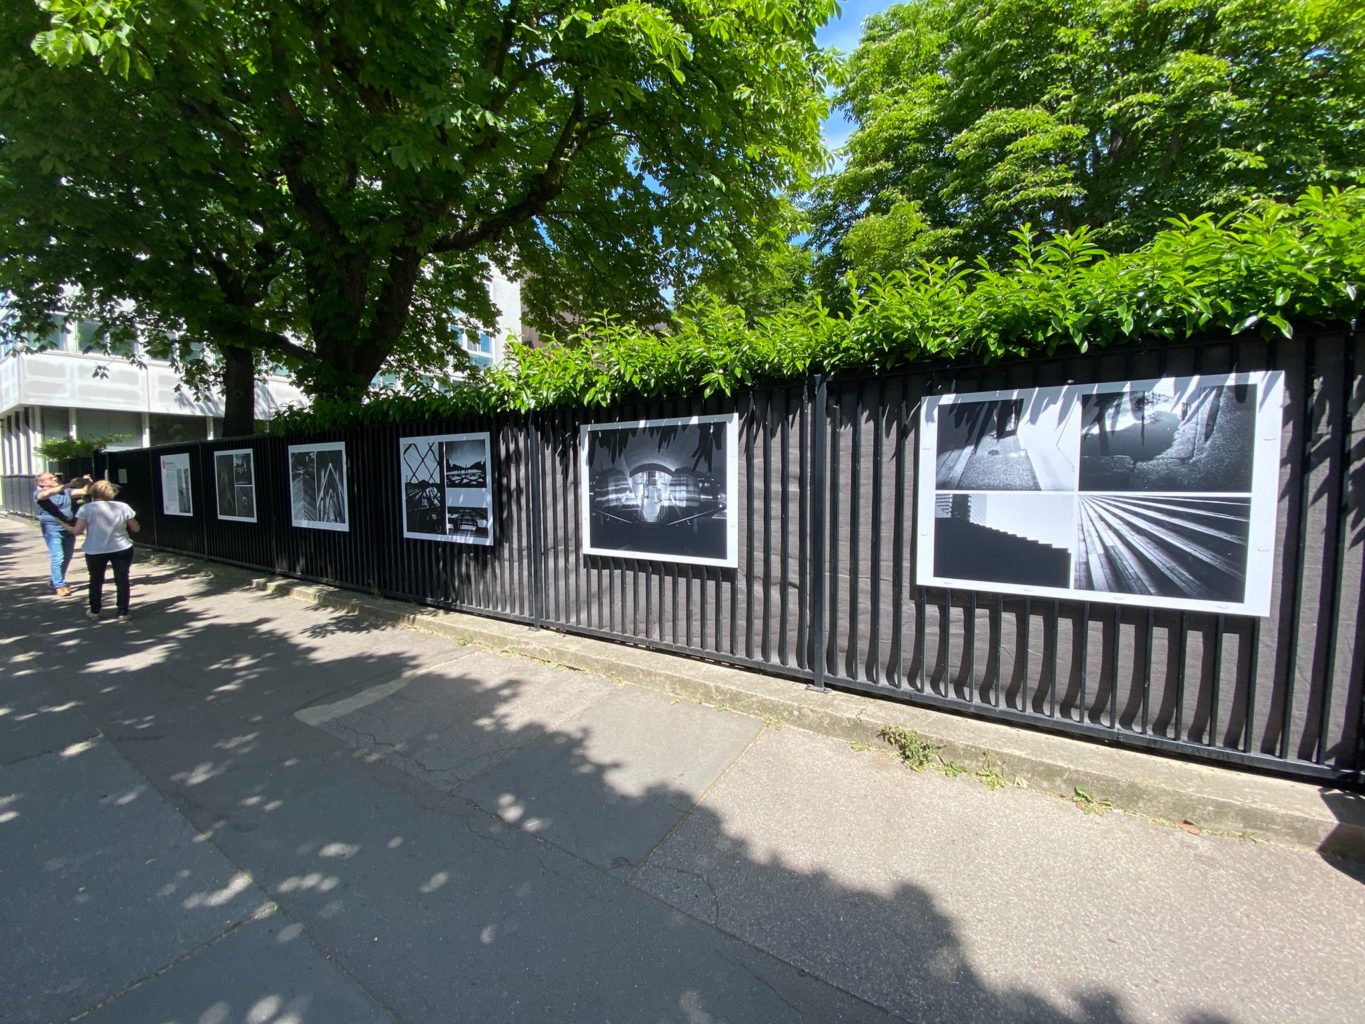 Photos exposées contre les grilles de la cité scolaire, côté avenue de Paris